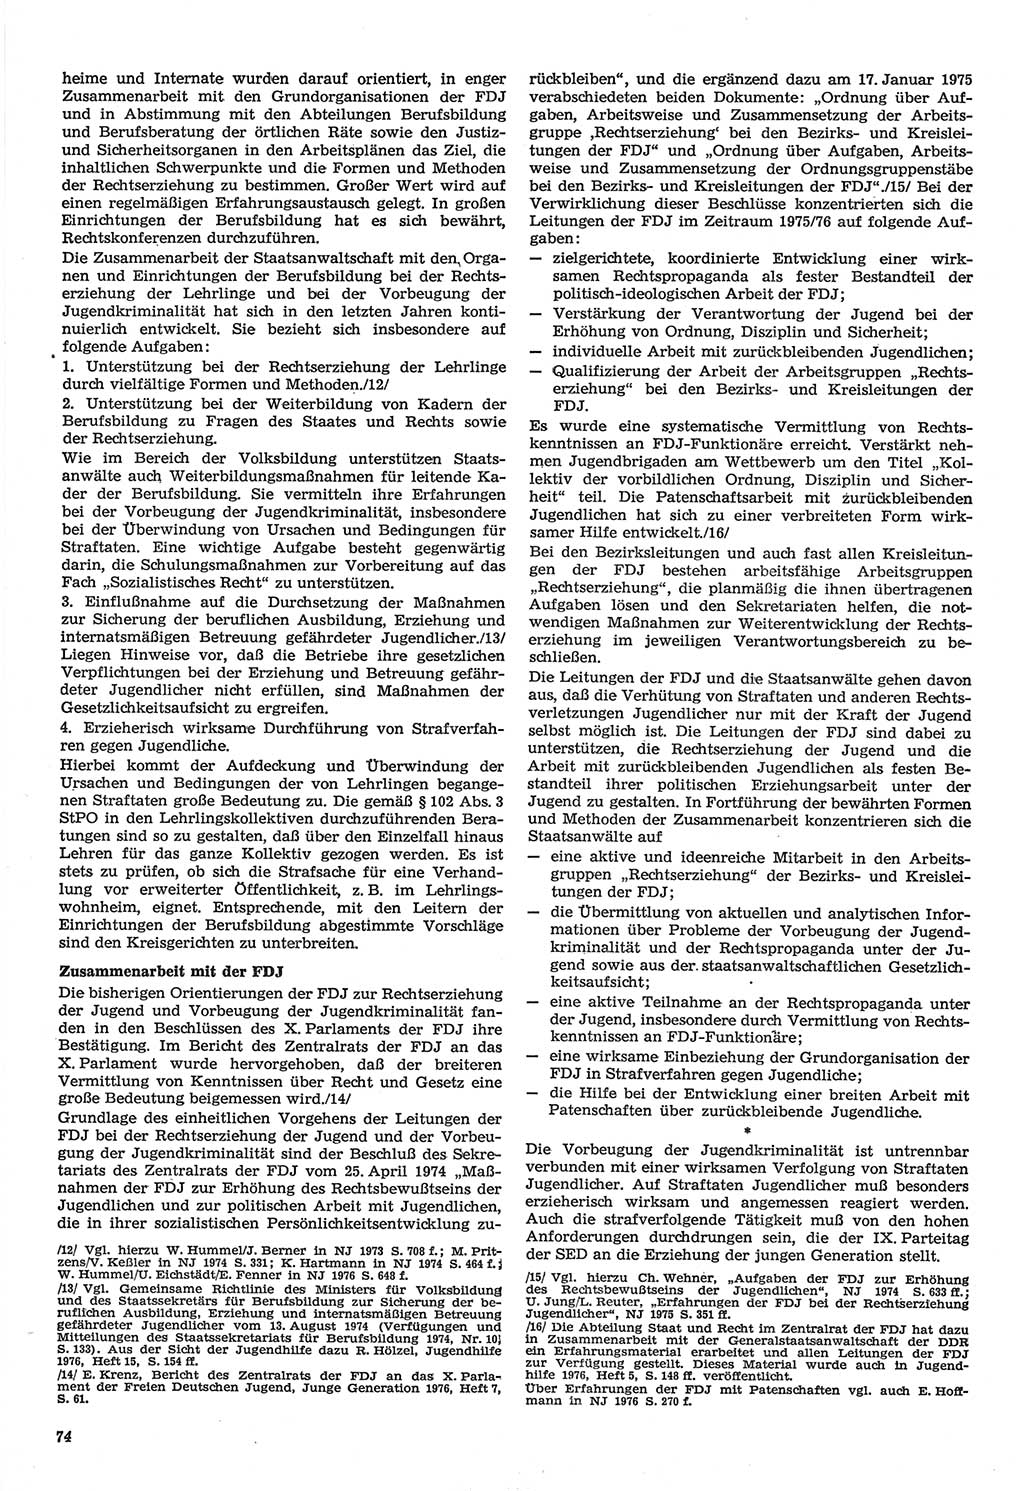 Neue Justiz (NJ), Zeitschrift für Recht und Rechtswissenschaft-Zeitschrift, sozialistisches Recht und Gesetzlichkeit, 31. Jahrgang 1977, Seite 74 (NJ DDR 1977, S. 74)